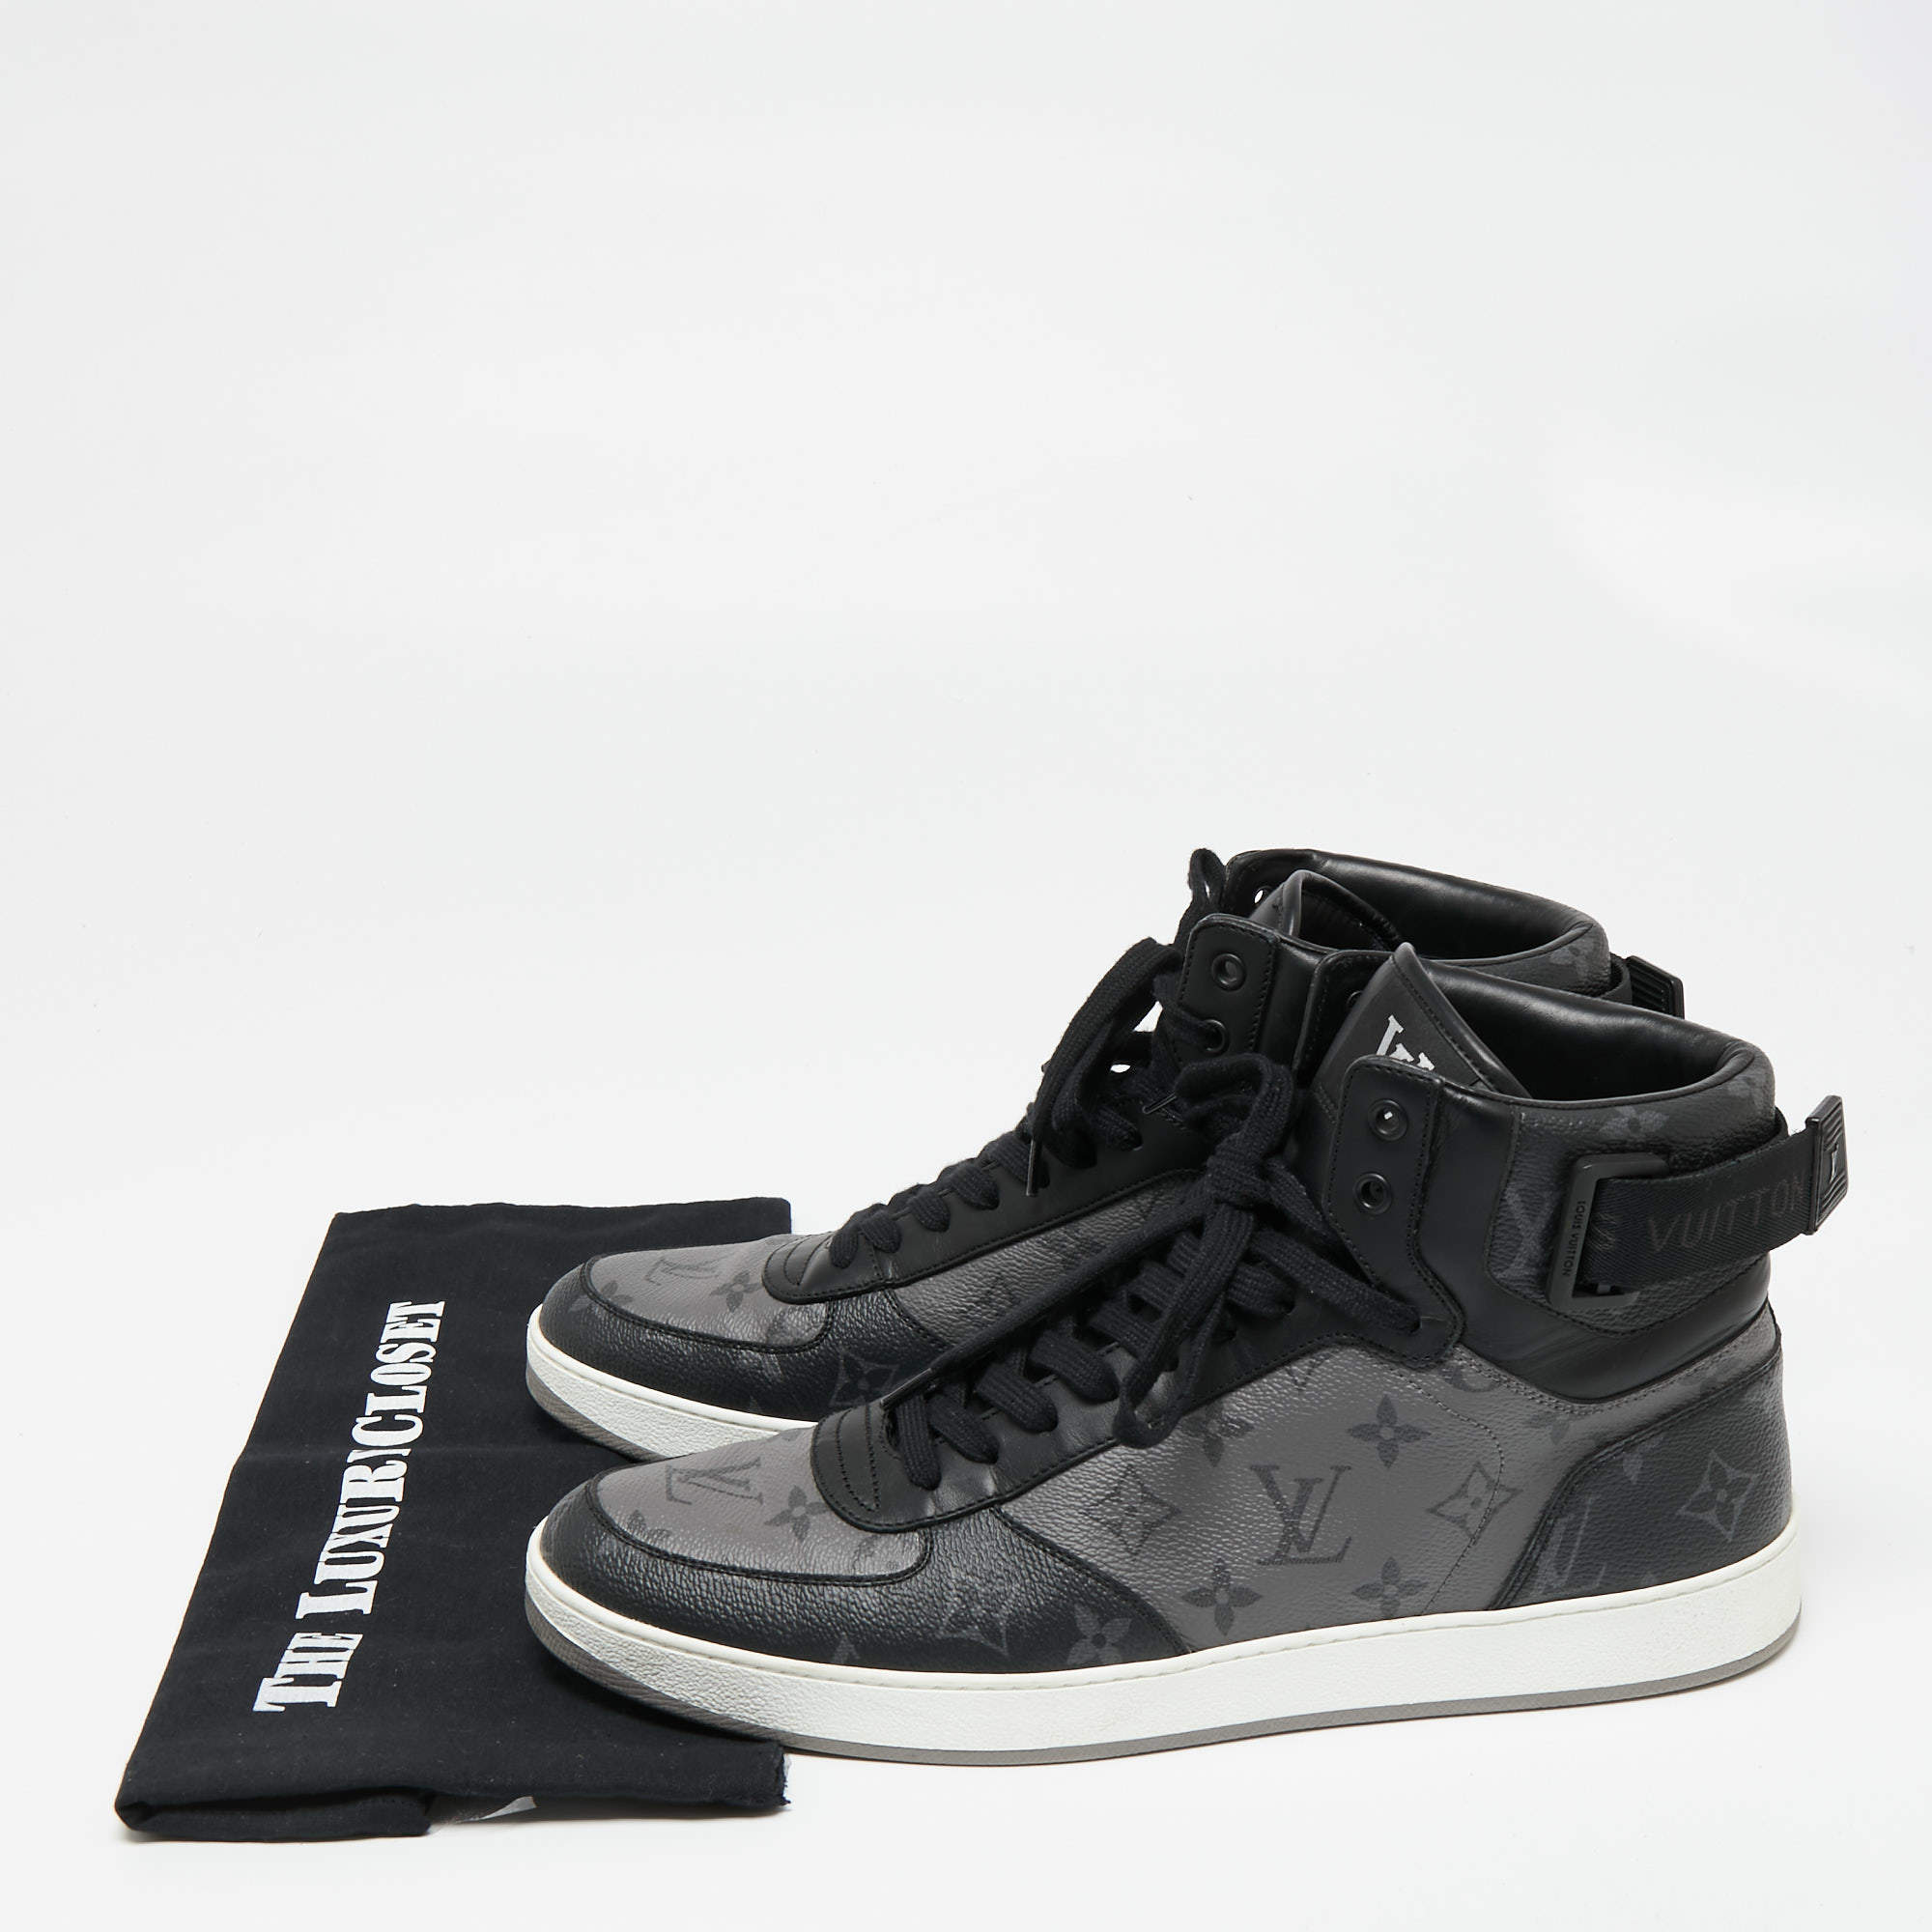 Louis Vuitton - Rivoli Sneakers Trainers - Grey - Men - Size: 11 - Luxury